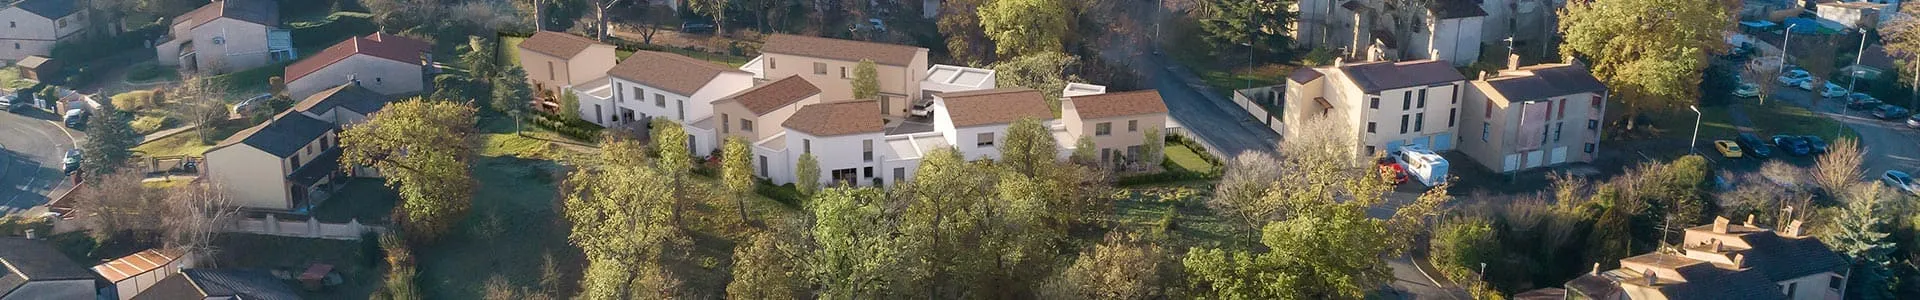 Vue aérienne du quartier autour de la résidence Villas Paloma